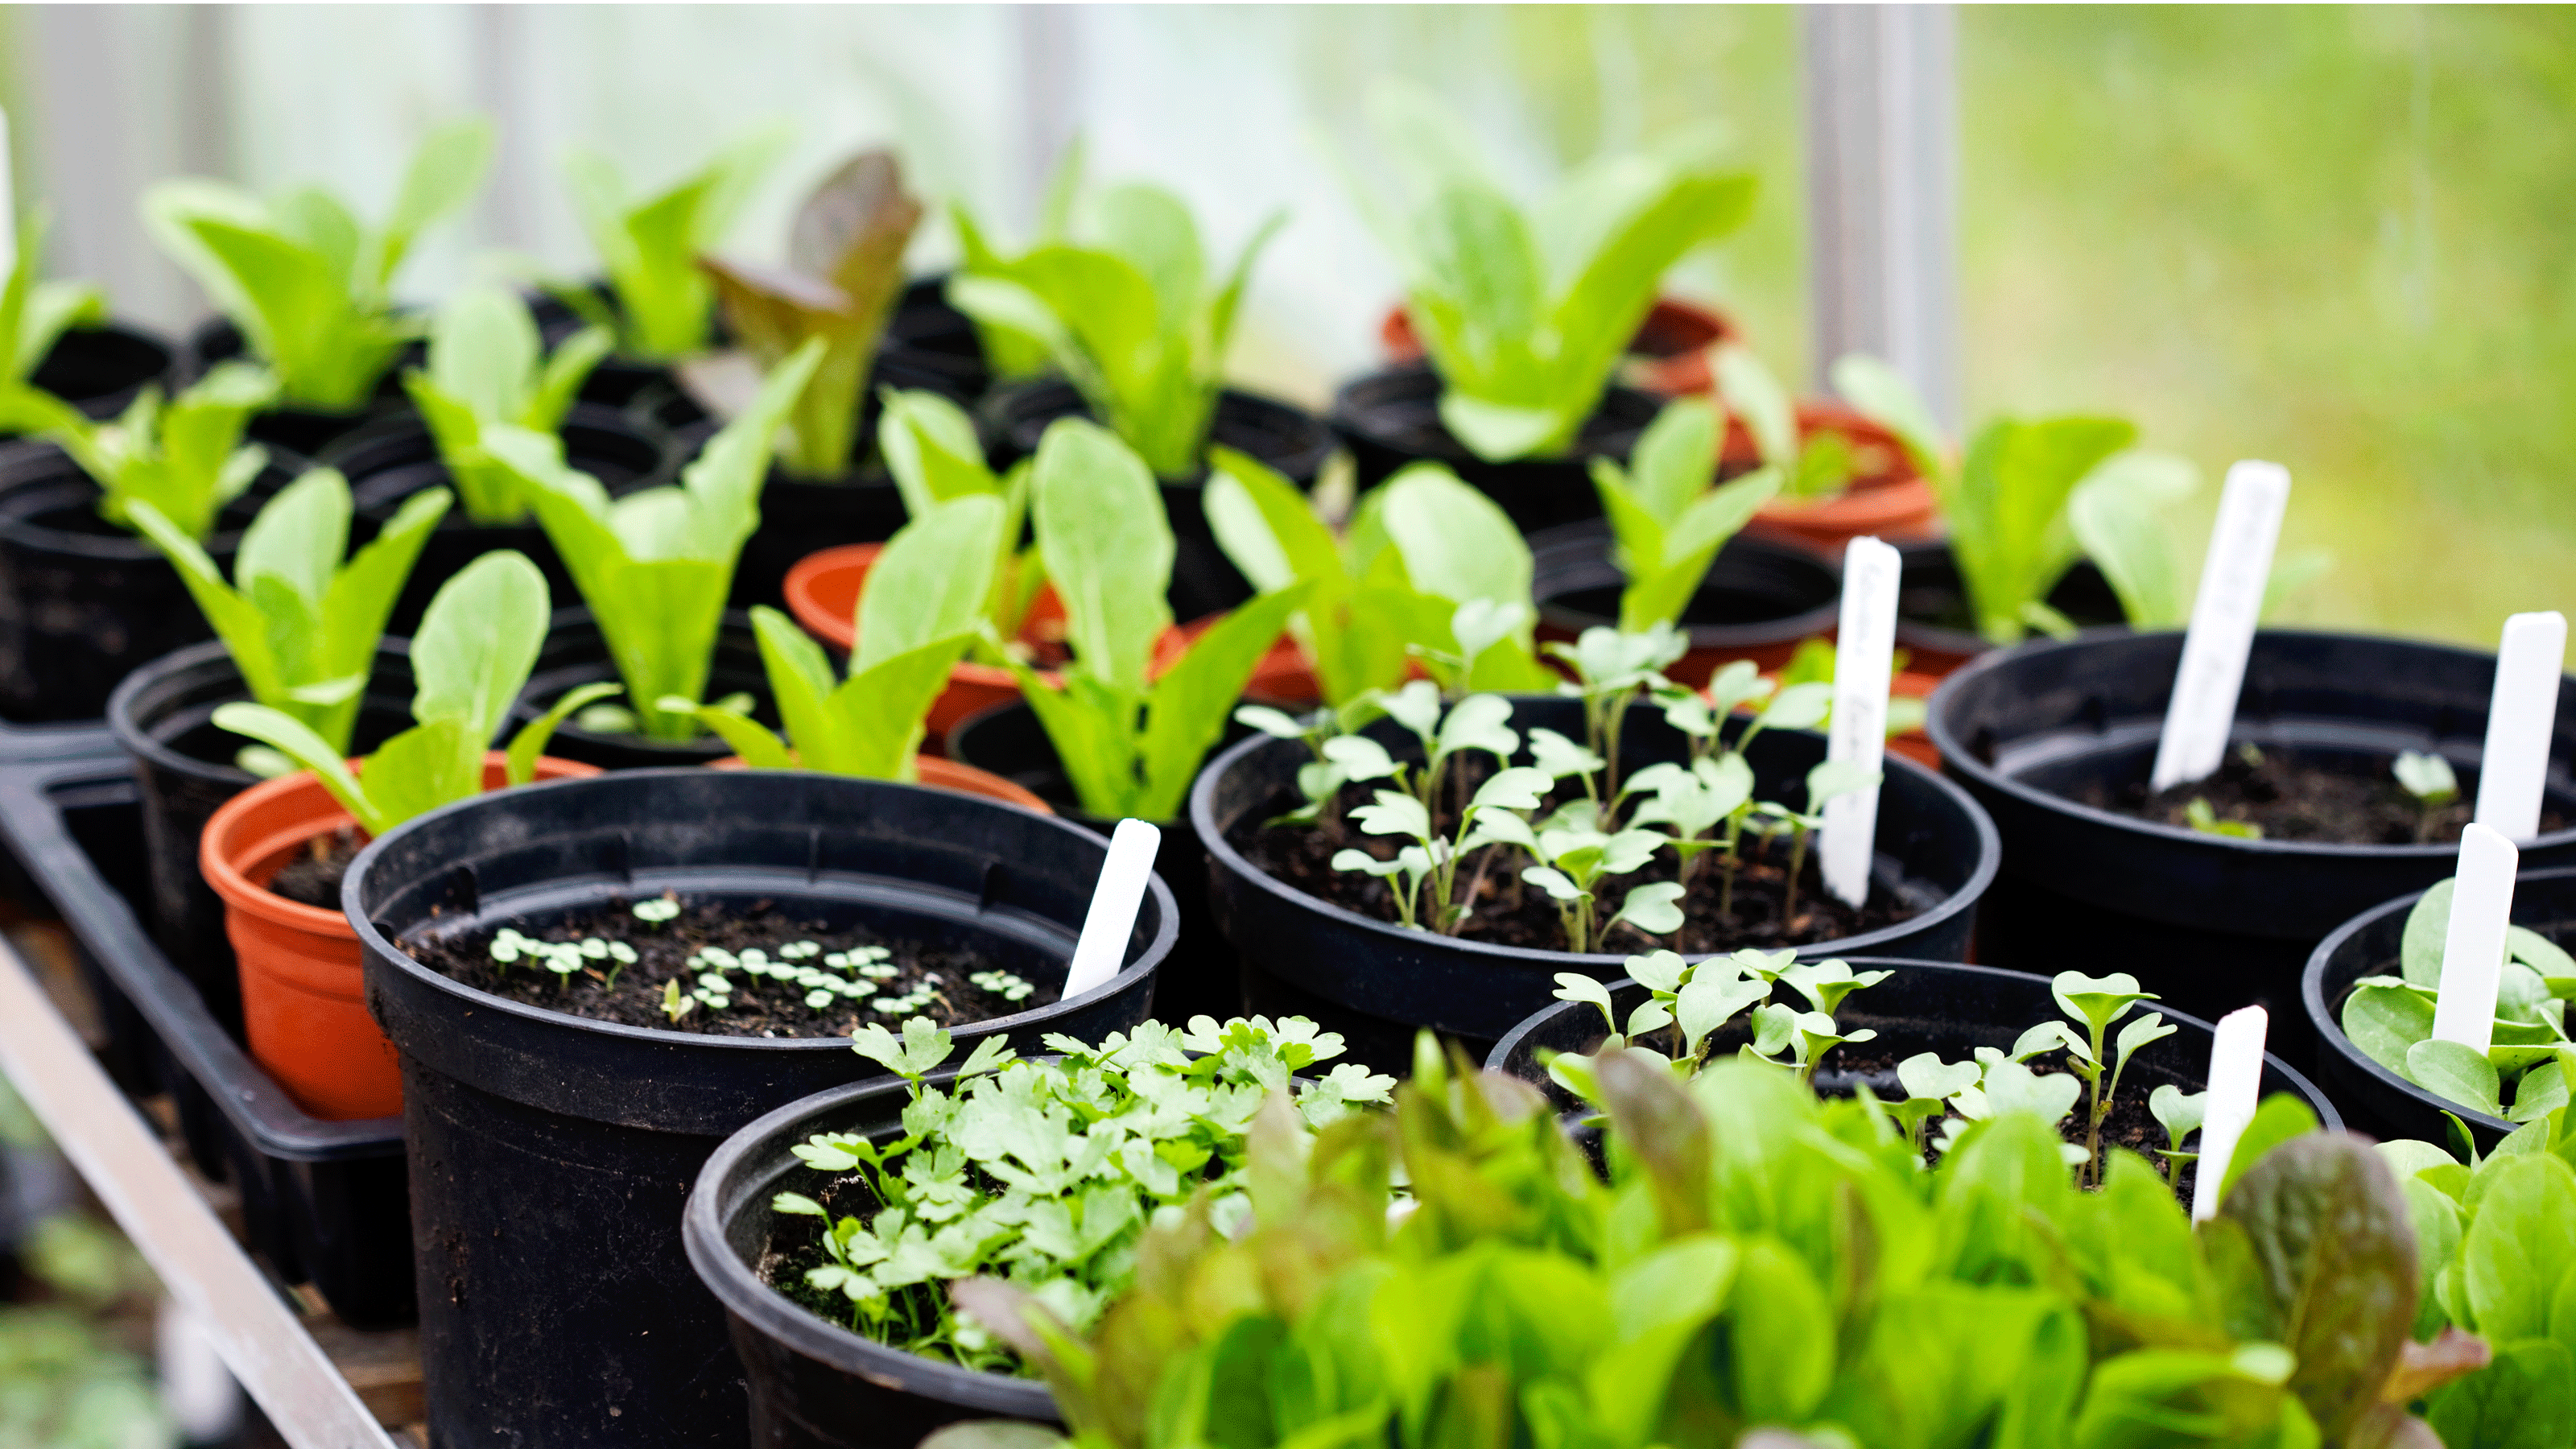 seedlings in pots